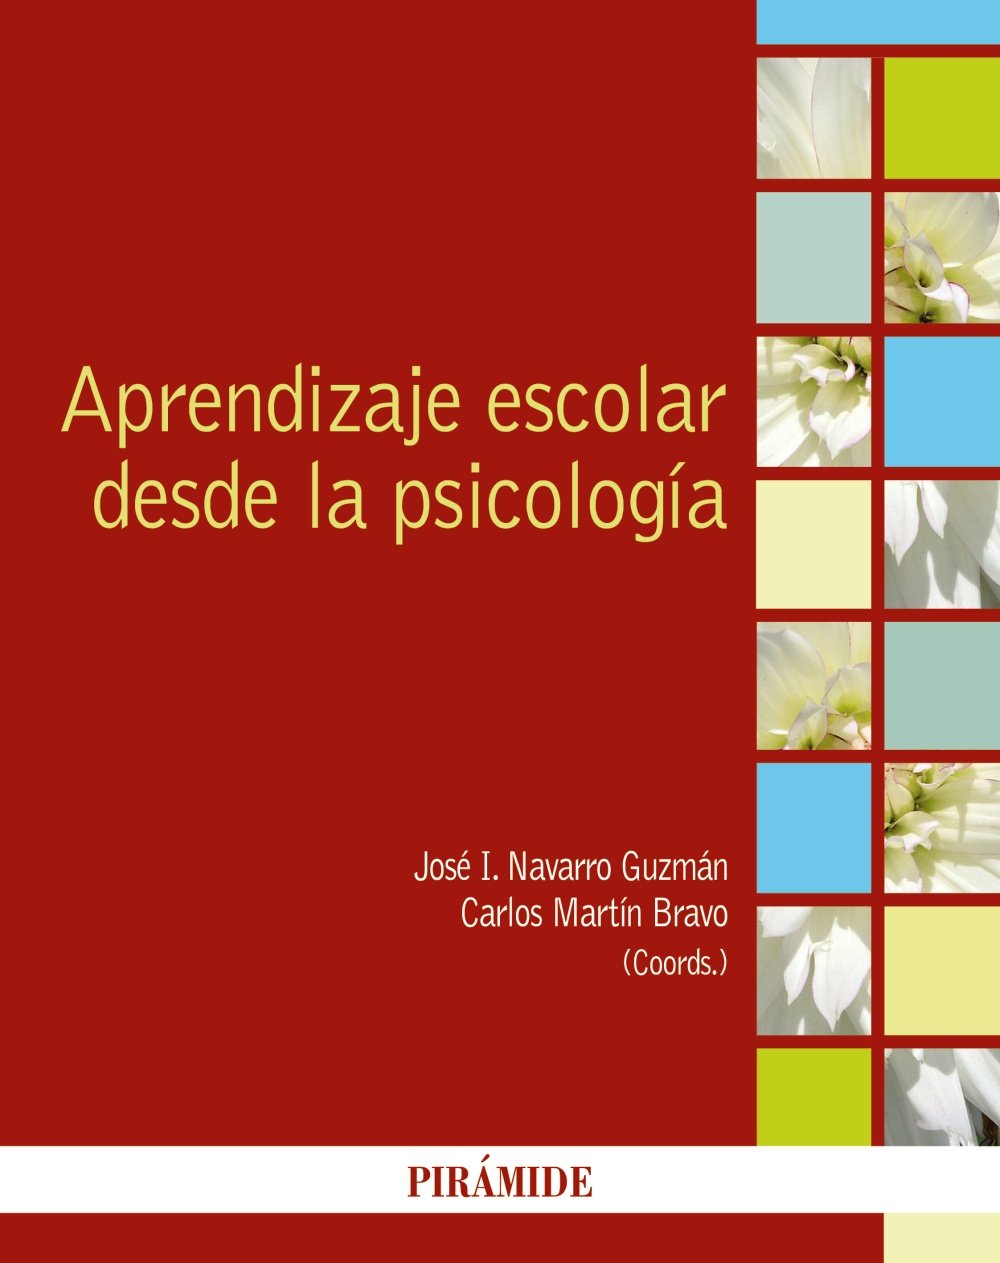 Imagen de portada del libro Aprendizaje escolar desde la psicología